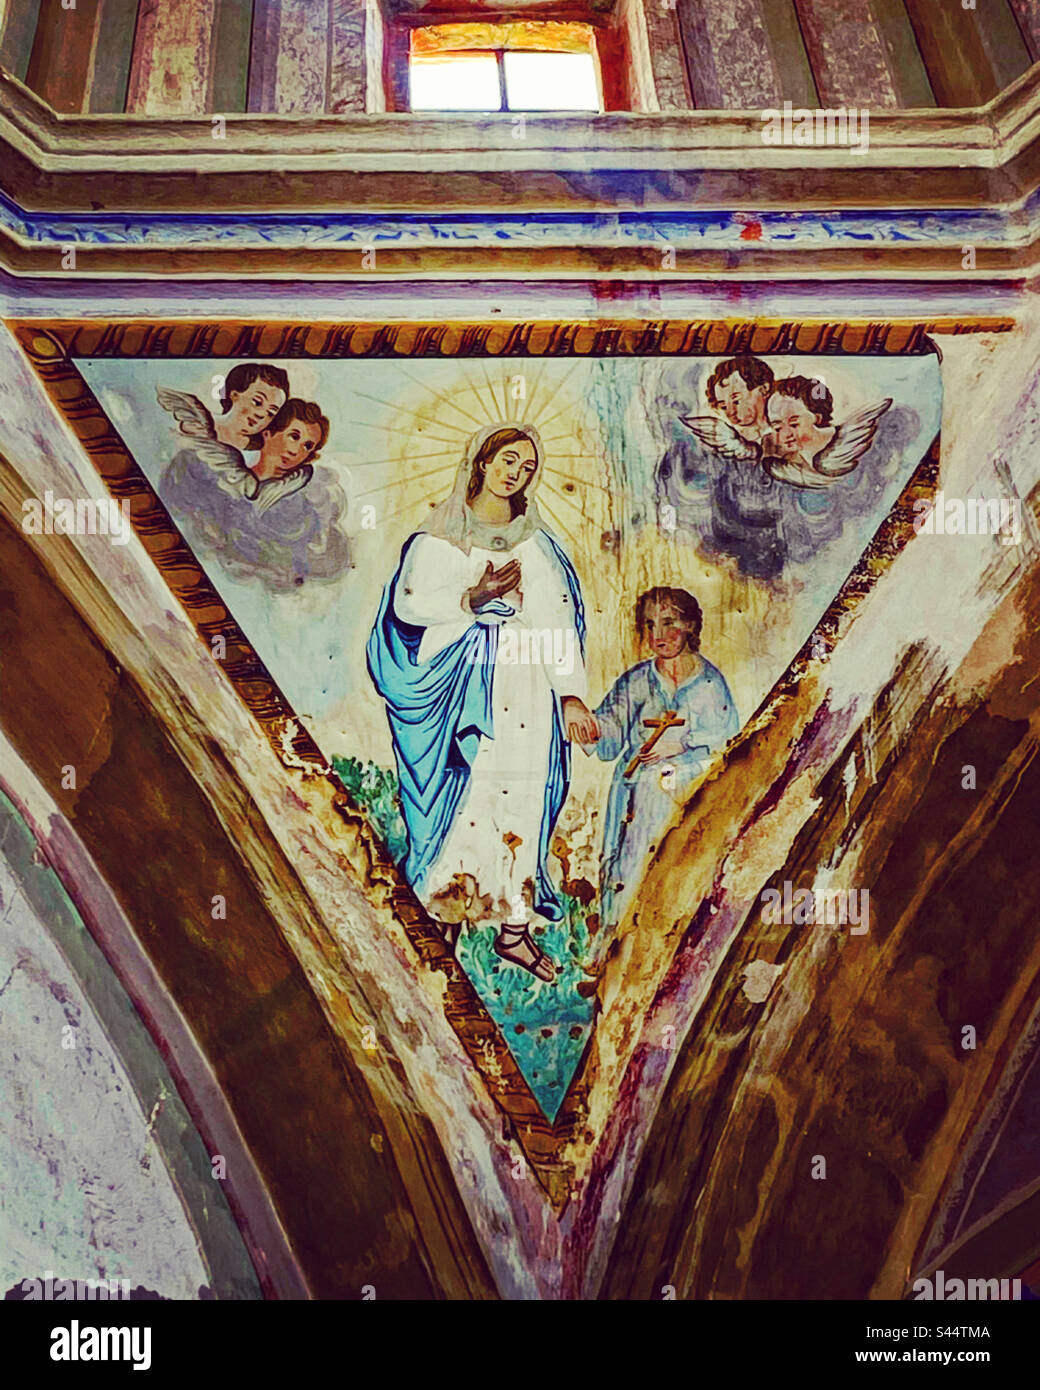 Ein altes Gemälde der Jungfrau Maria, das ein Jesuskind in der Hand hält und von Engelchen begleitet wird, schmückt Nuestra Señora de los Dolores in Toliman, Queretaro, Mexiko Stockfoto